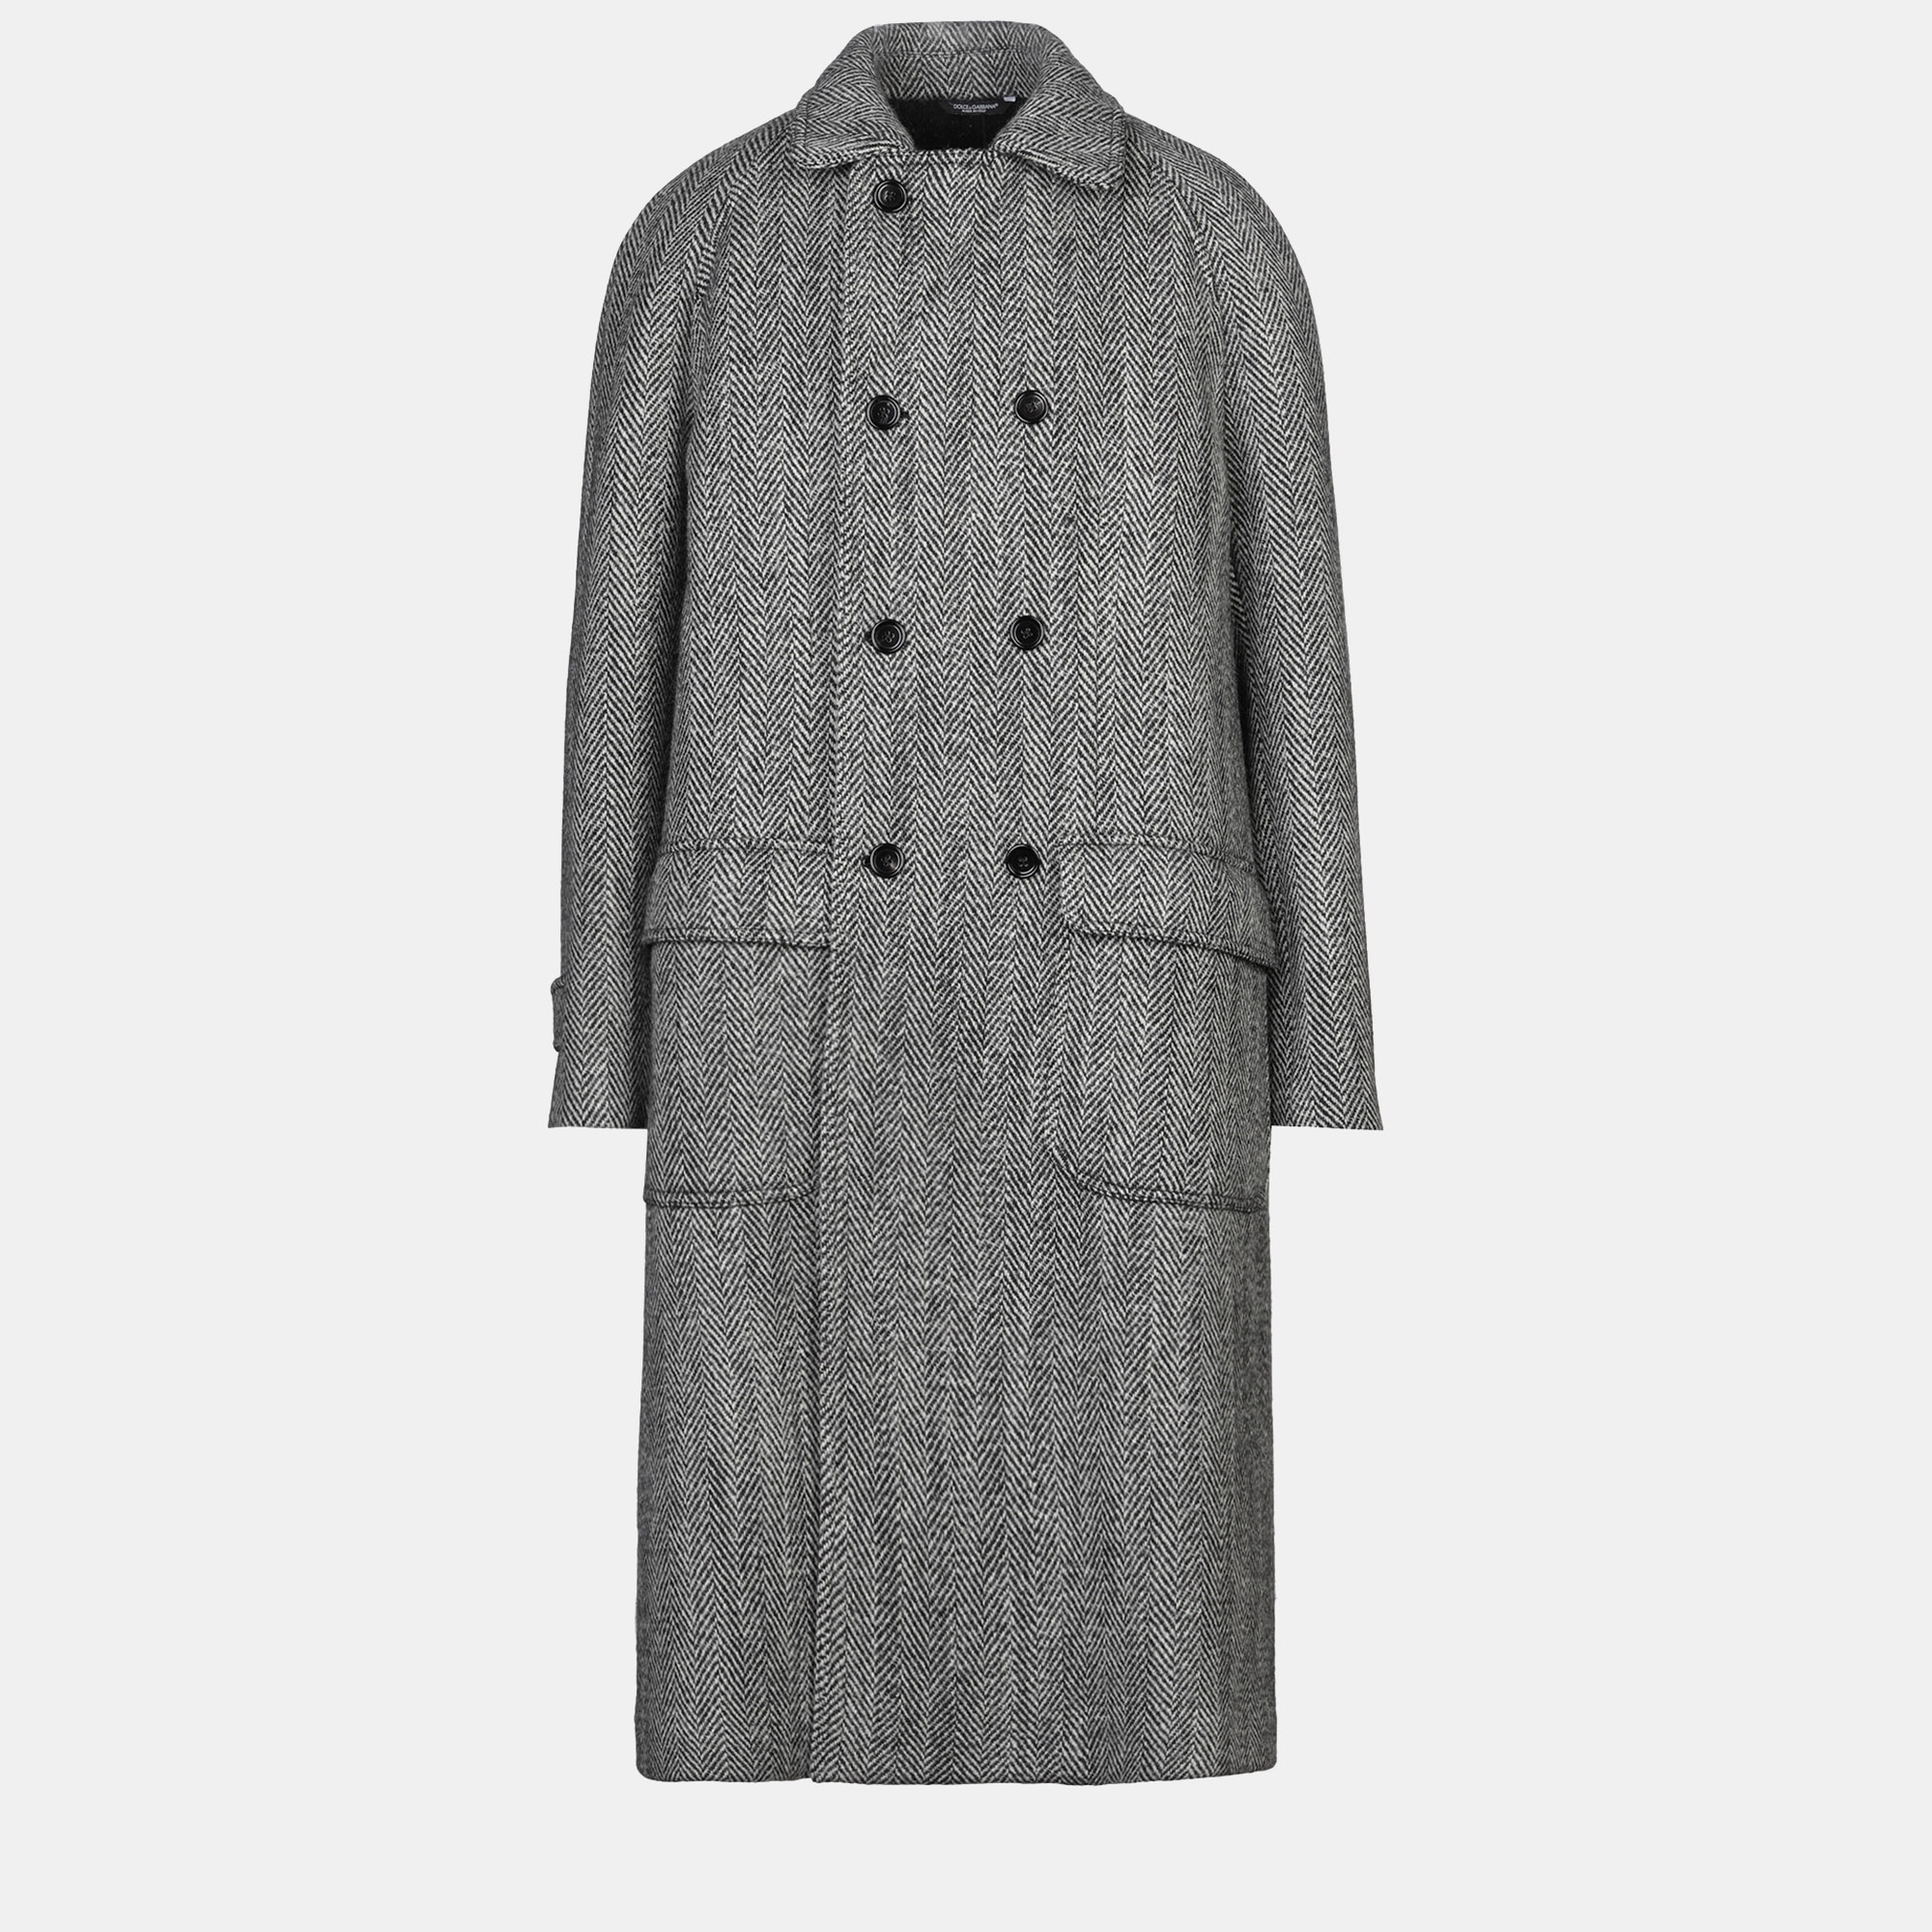 Dolce & gabbana virgin wool coat 46